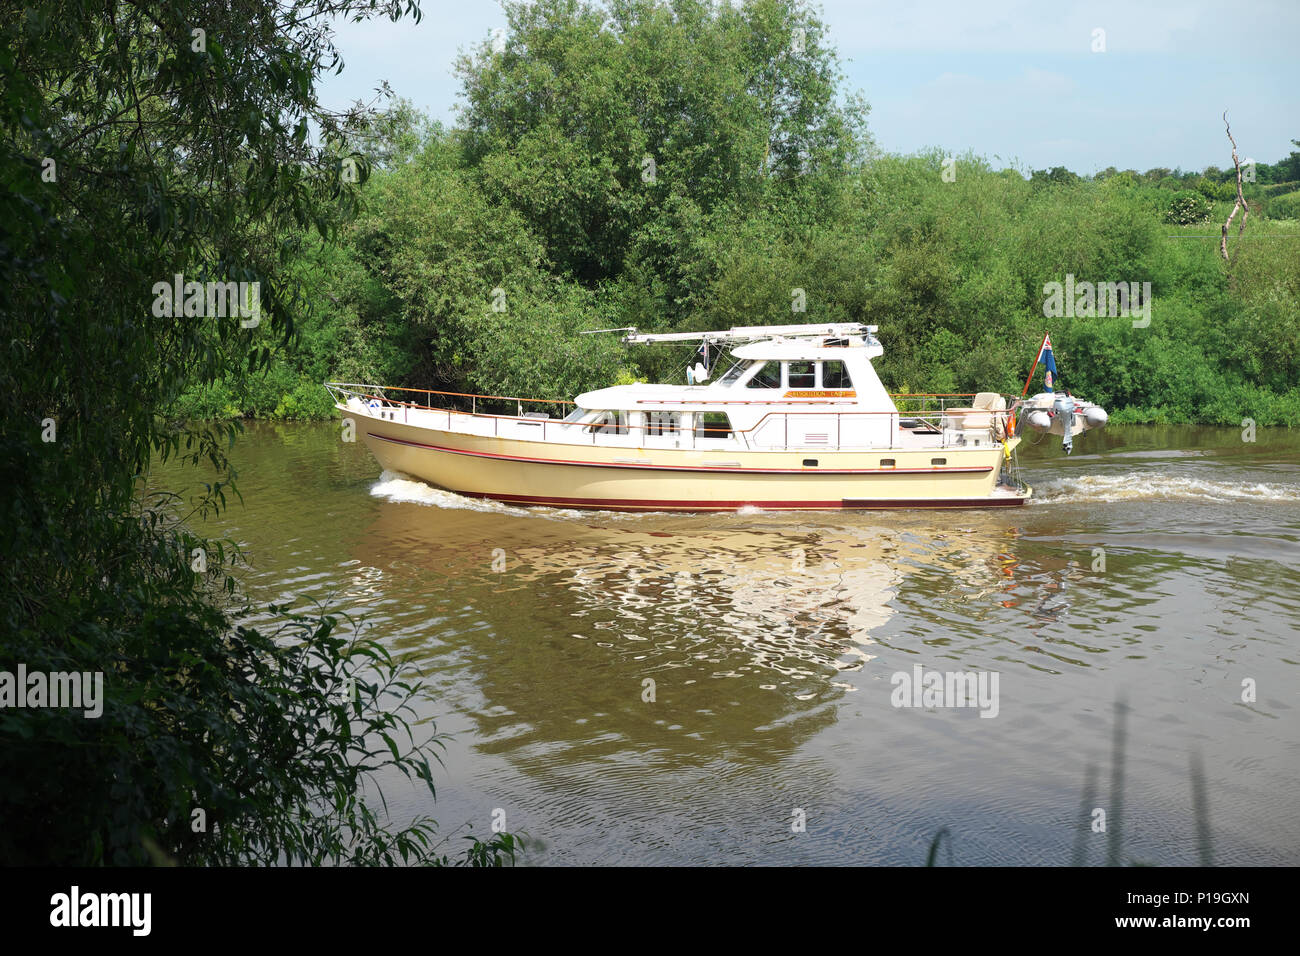 Upton auf Severn, Worcestershire, Großbritannien - Motorboot Bootfahren auf dem Fluss Severn Stockfoto